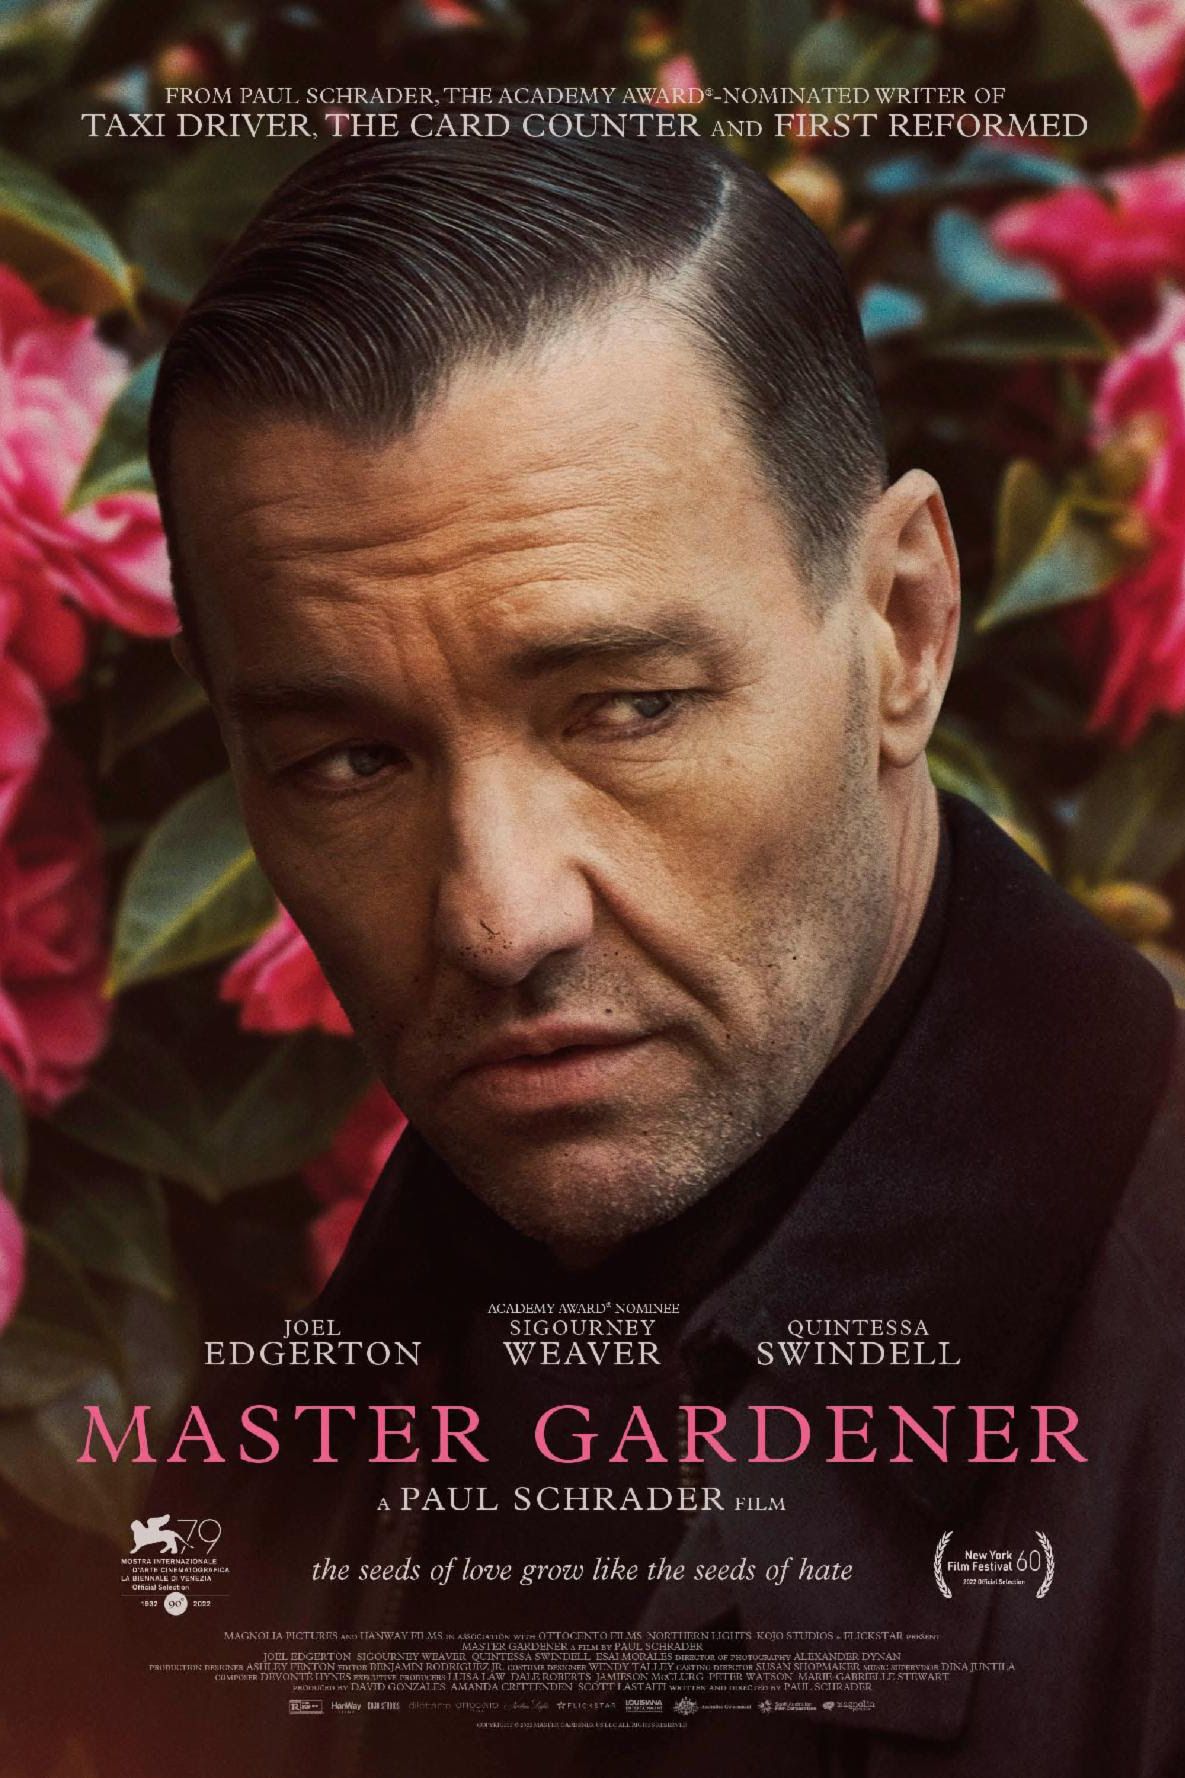 Master Gardener Cast & Character Guide